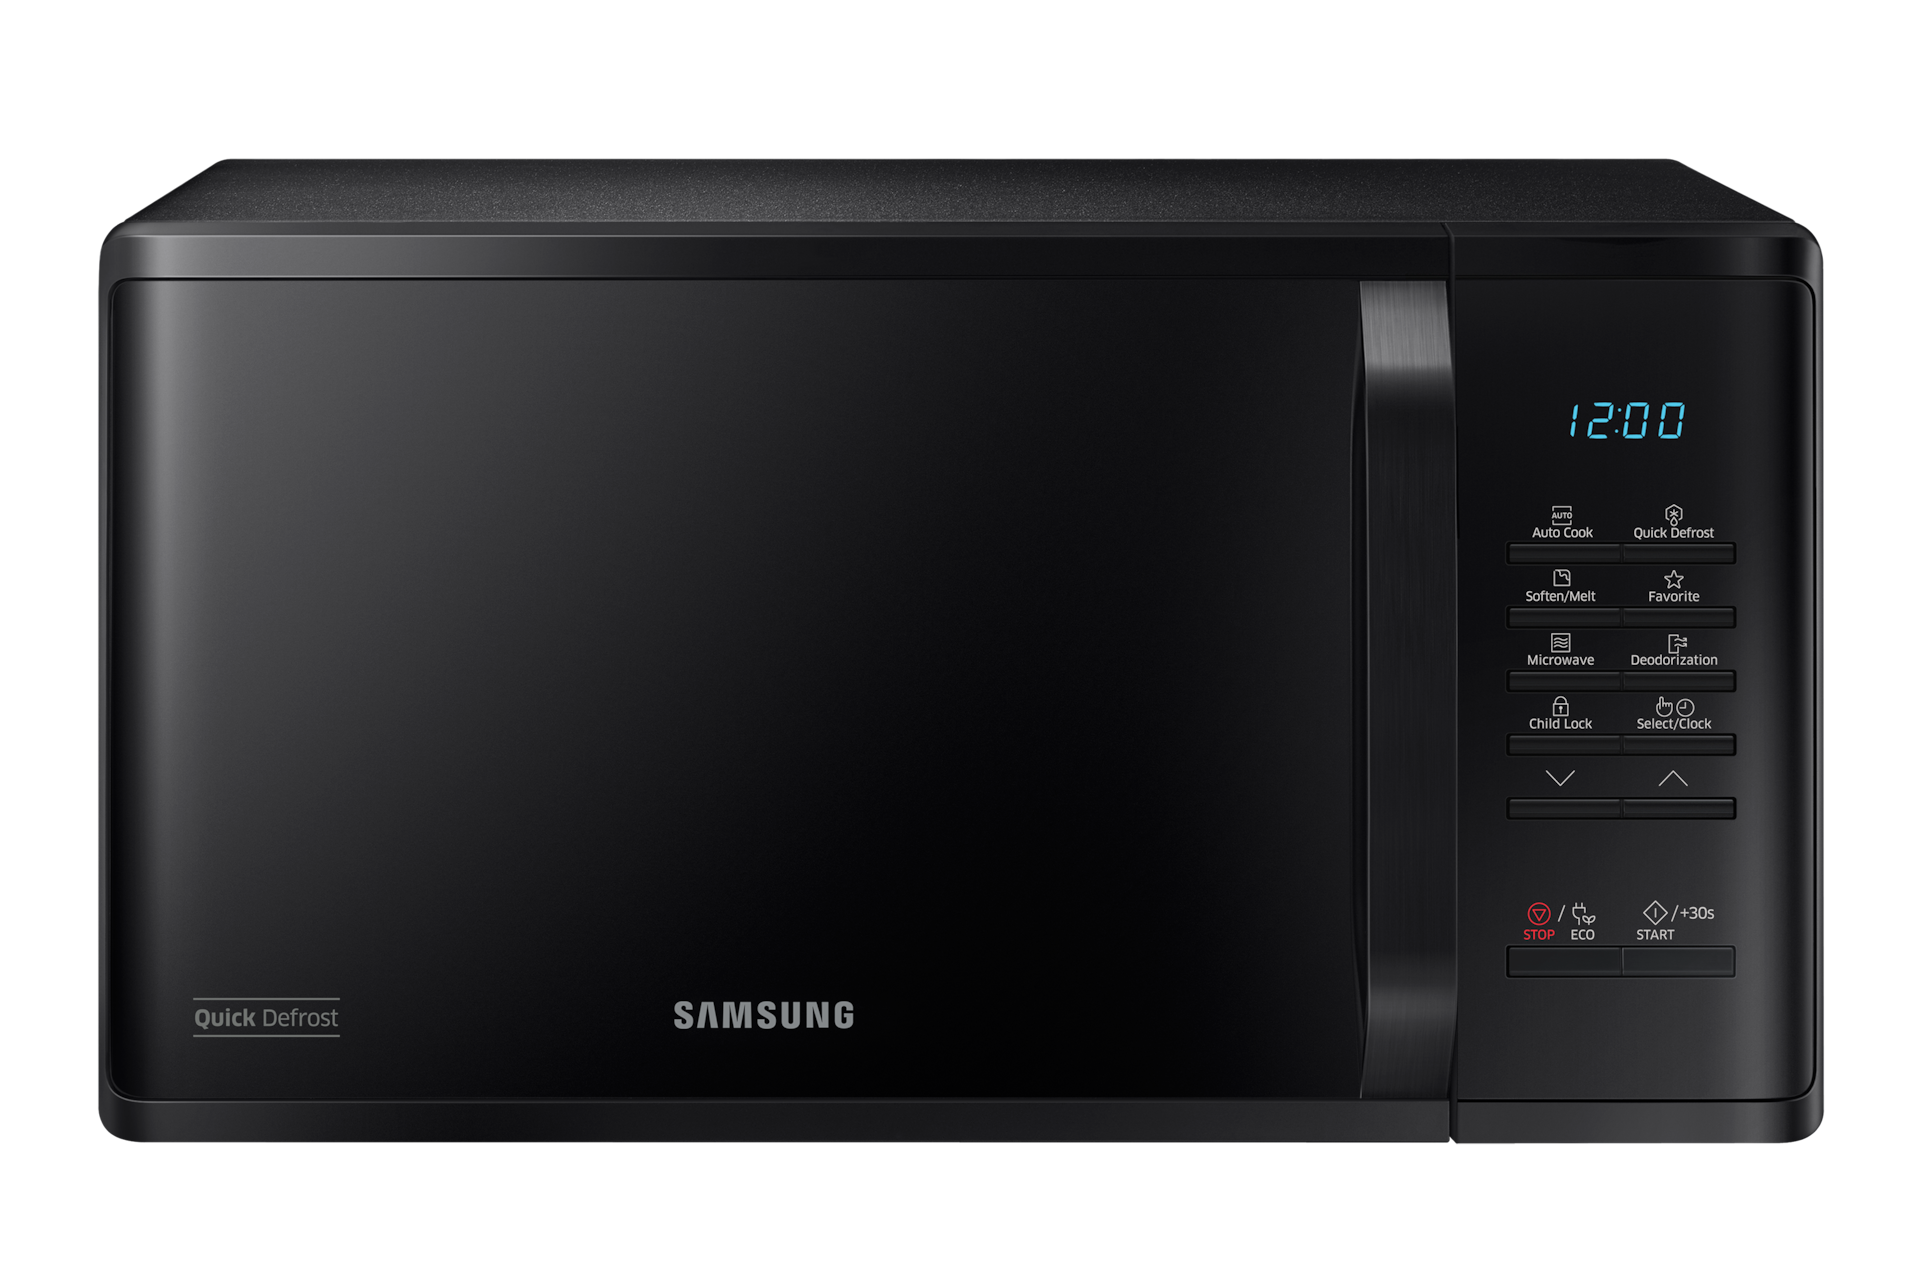 Samsung Micro-ondes solo 23L, Décongélation Quick Defrost - MS23K3513AK, Cuisson, Achat, prix, avis